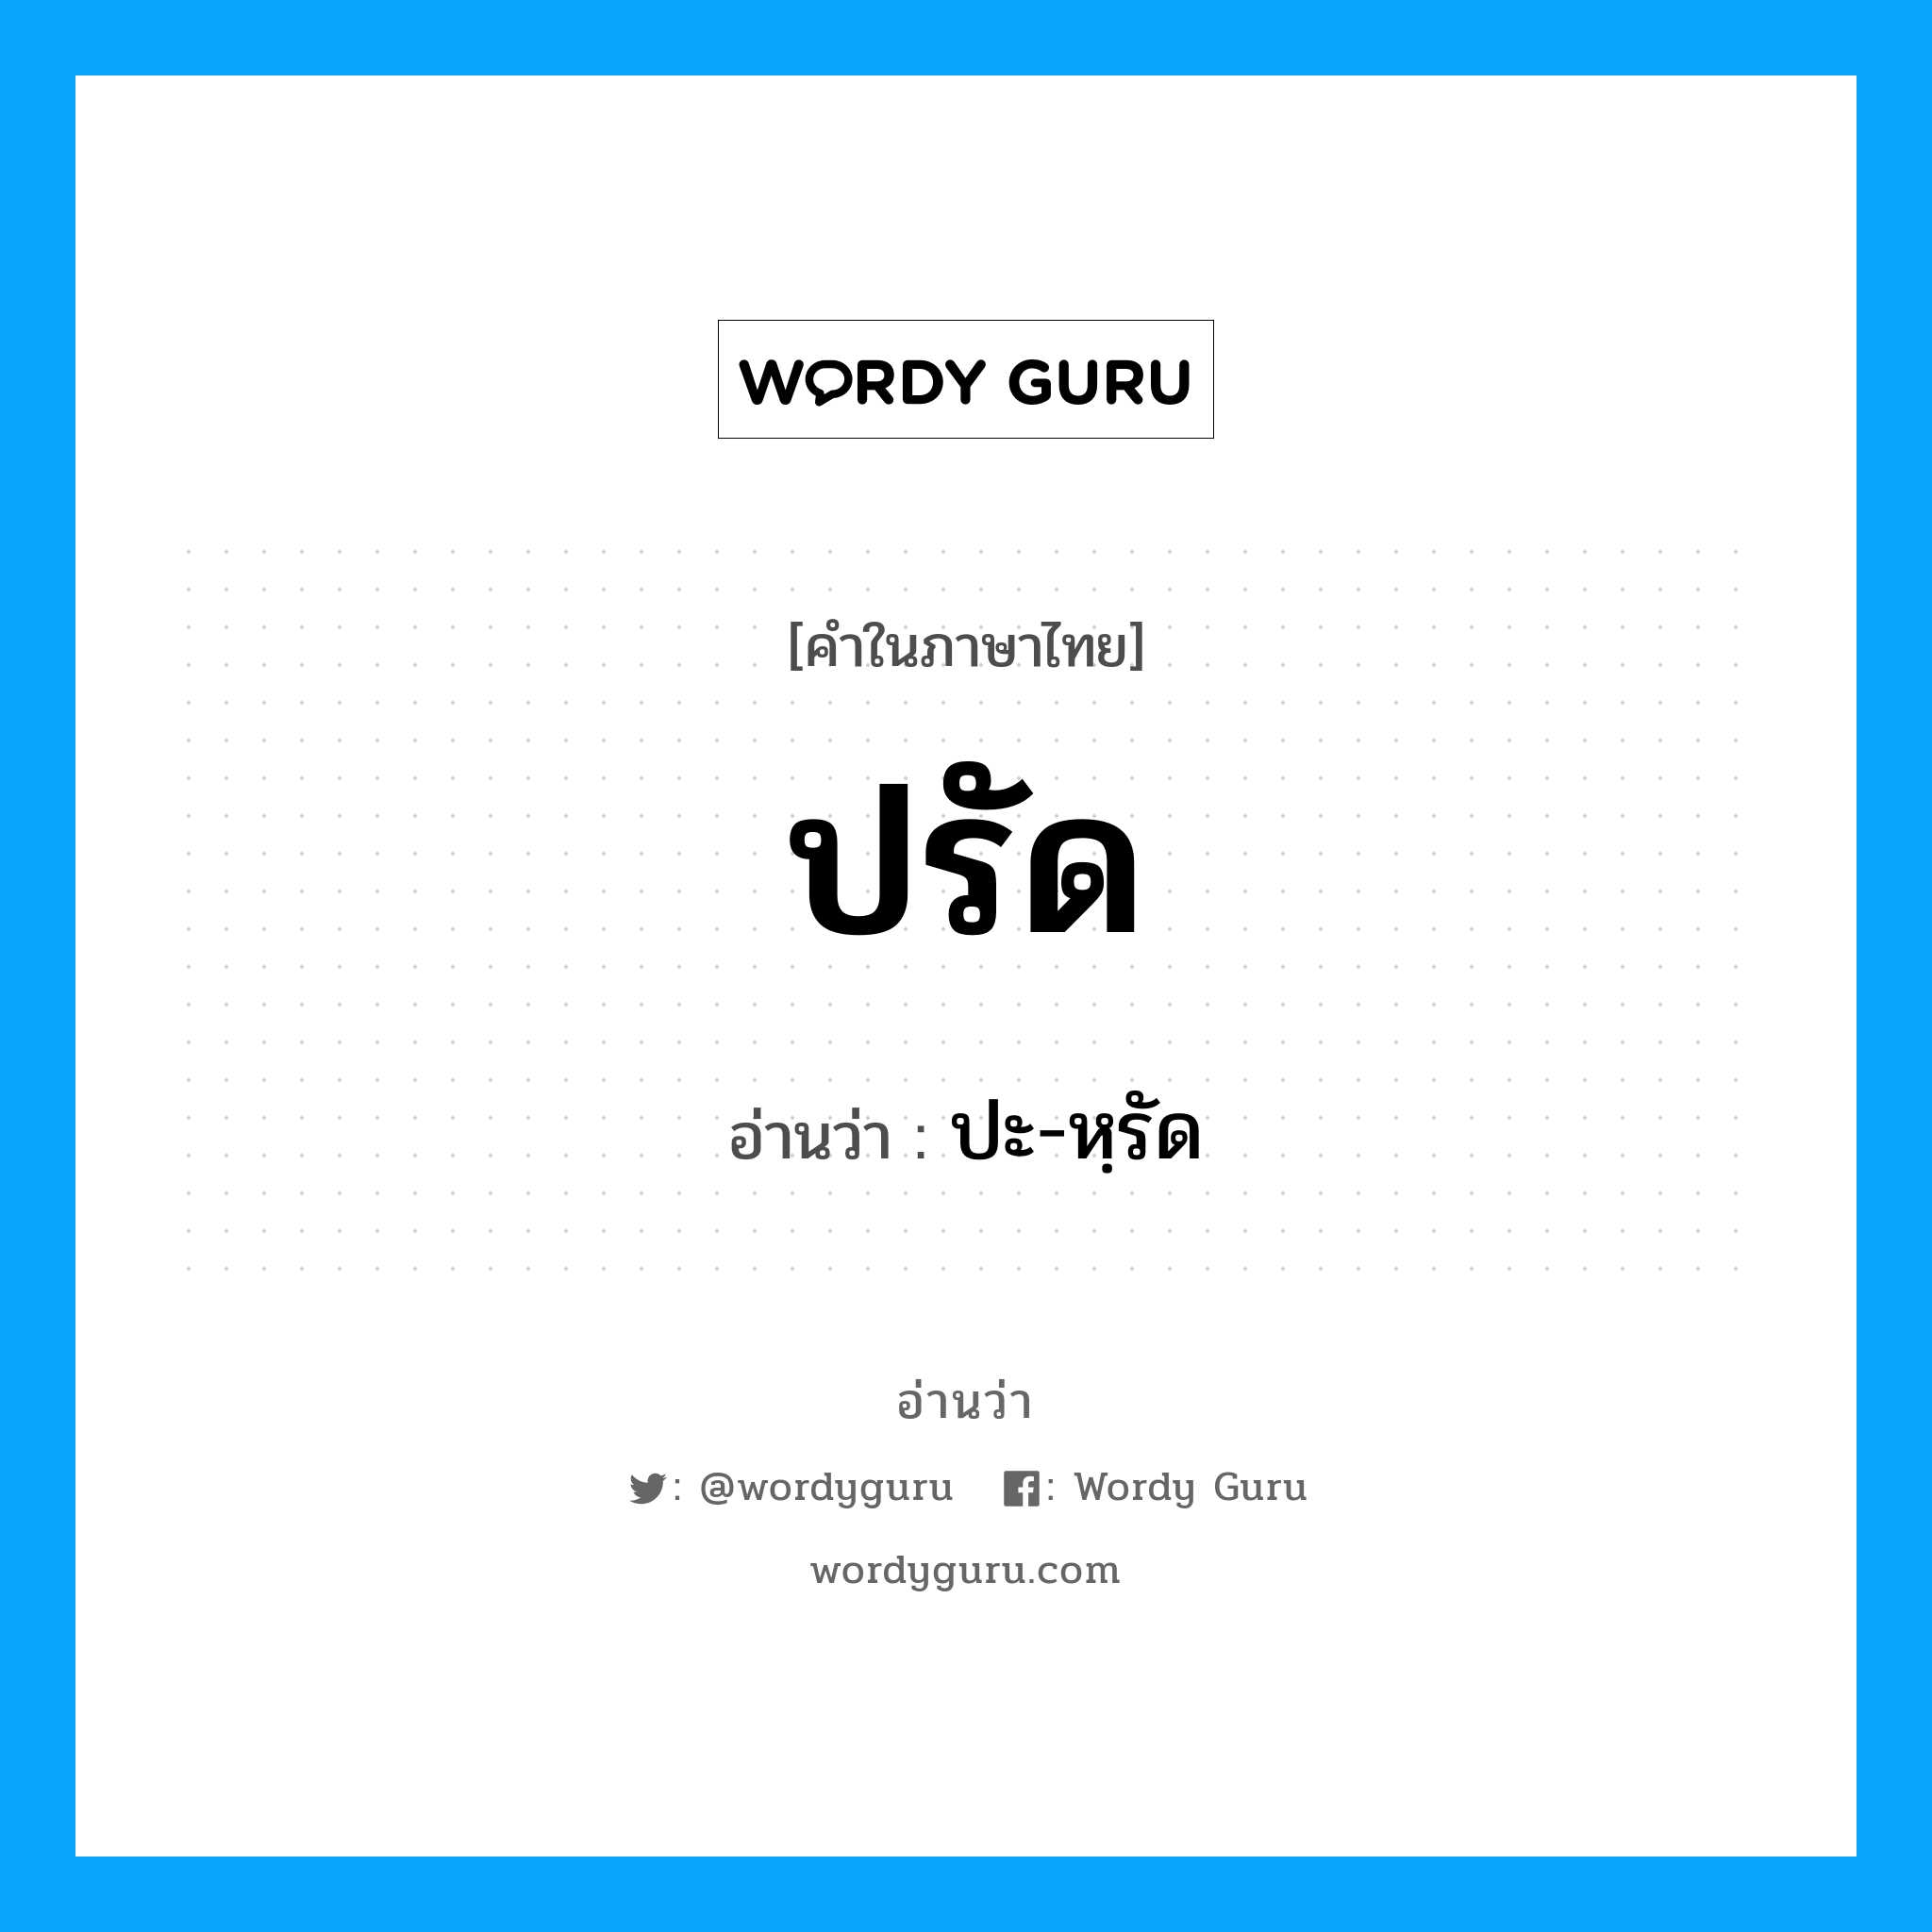 ปะ-หฺรัด เป็นคำอ่านของคำไหน?, คำในภาษาไทย ปะ-หฺรัด อ่านว่า ปรัด